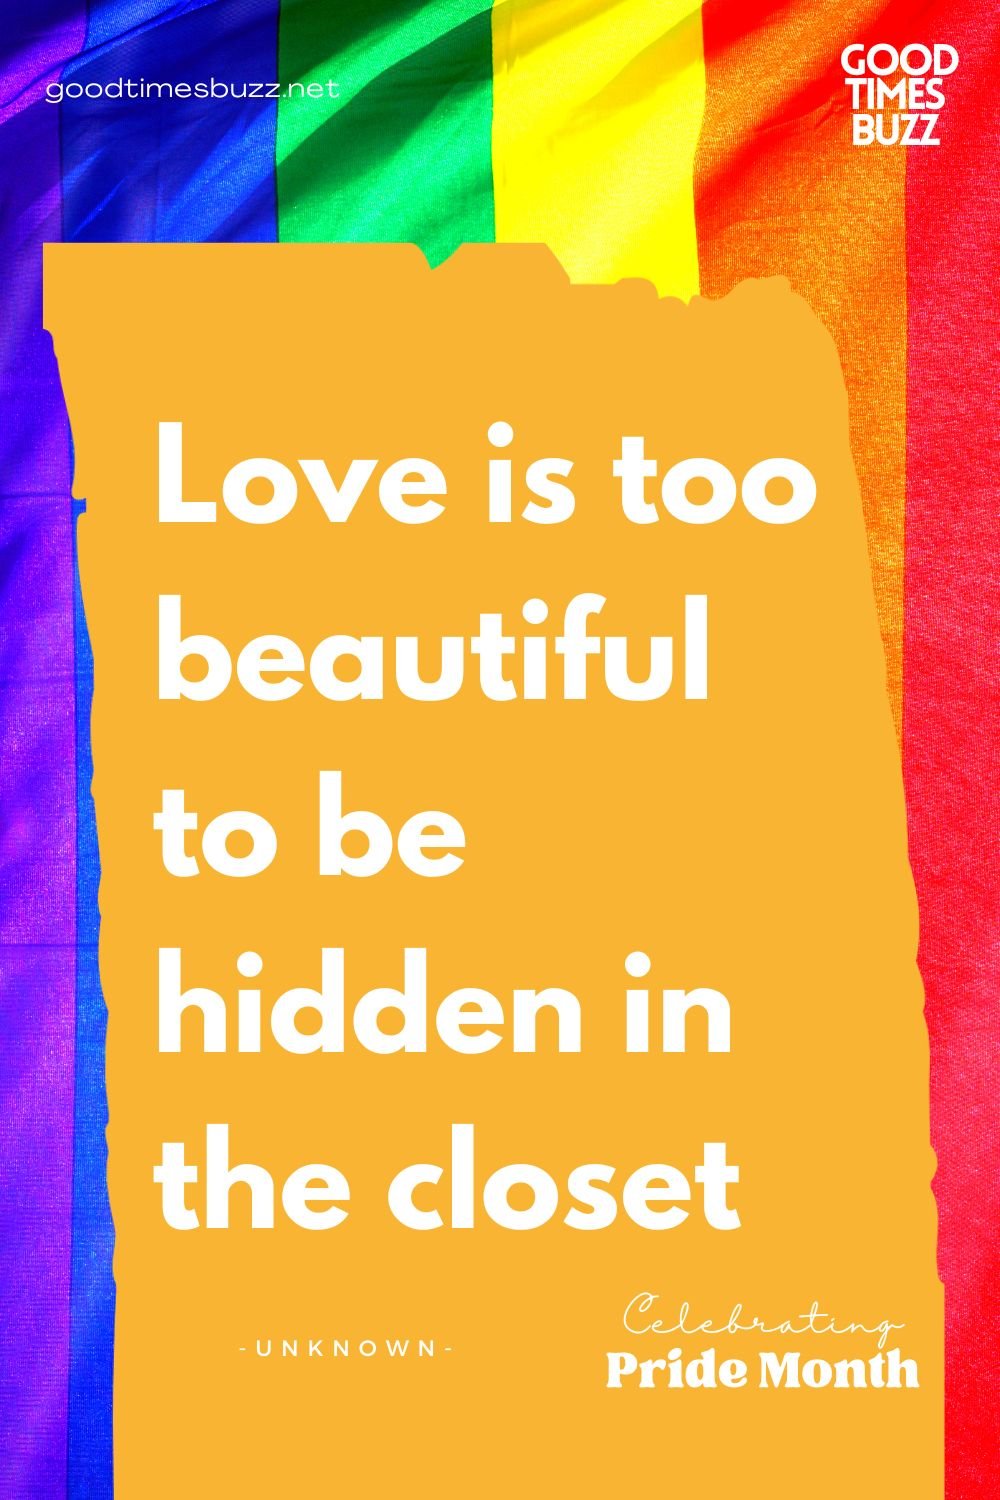 break the closet pride quotes